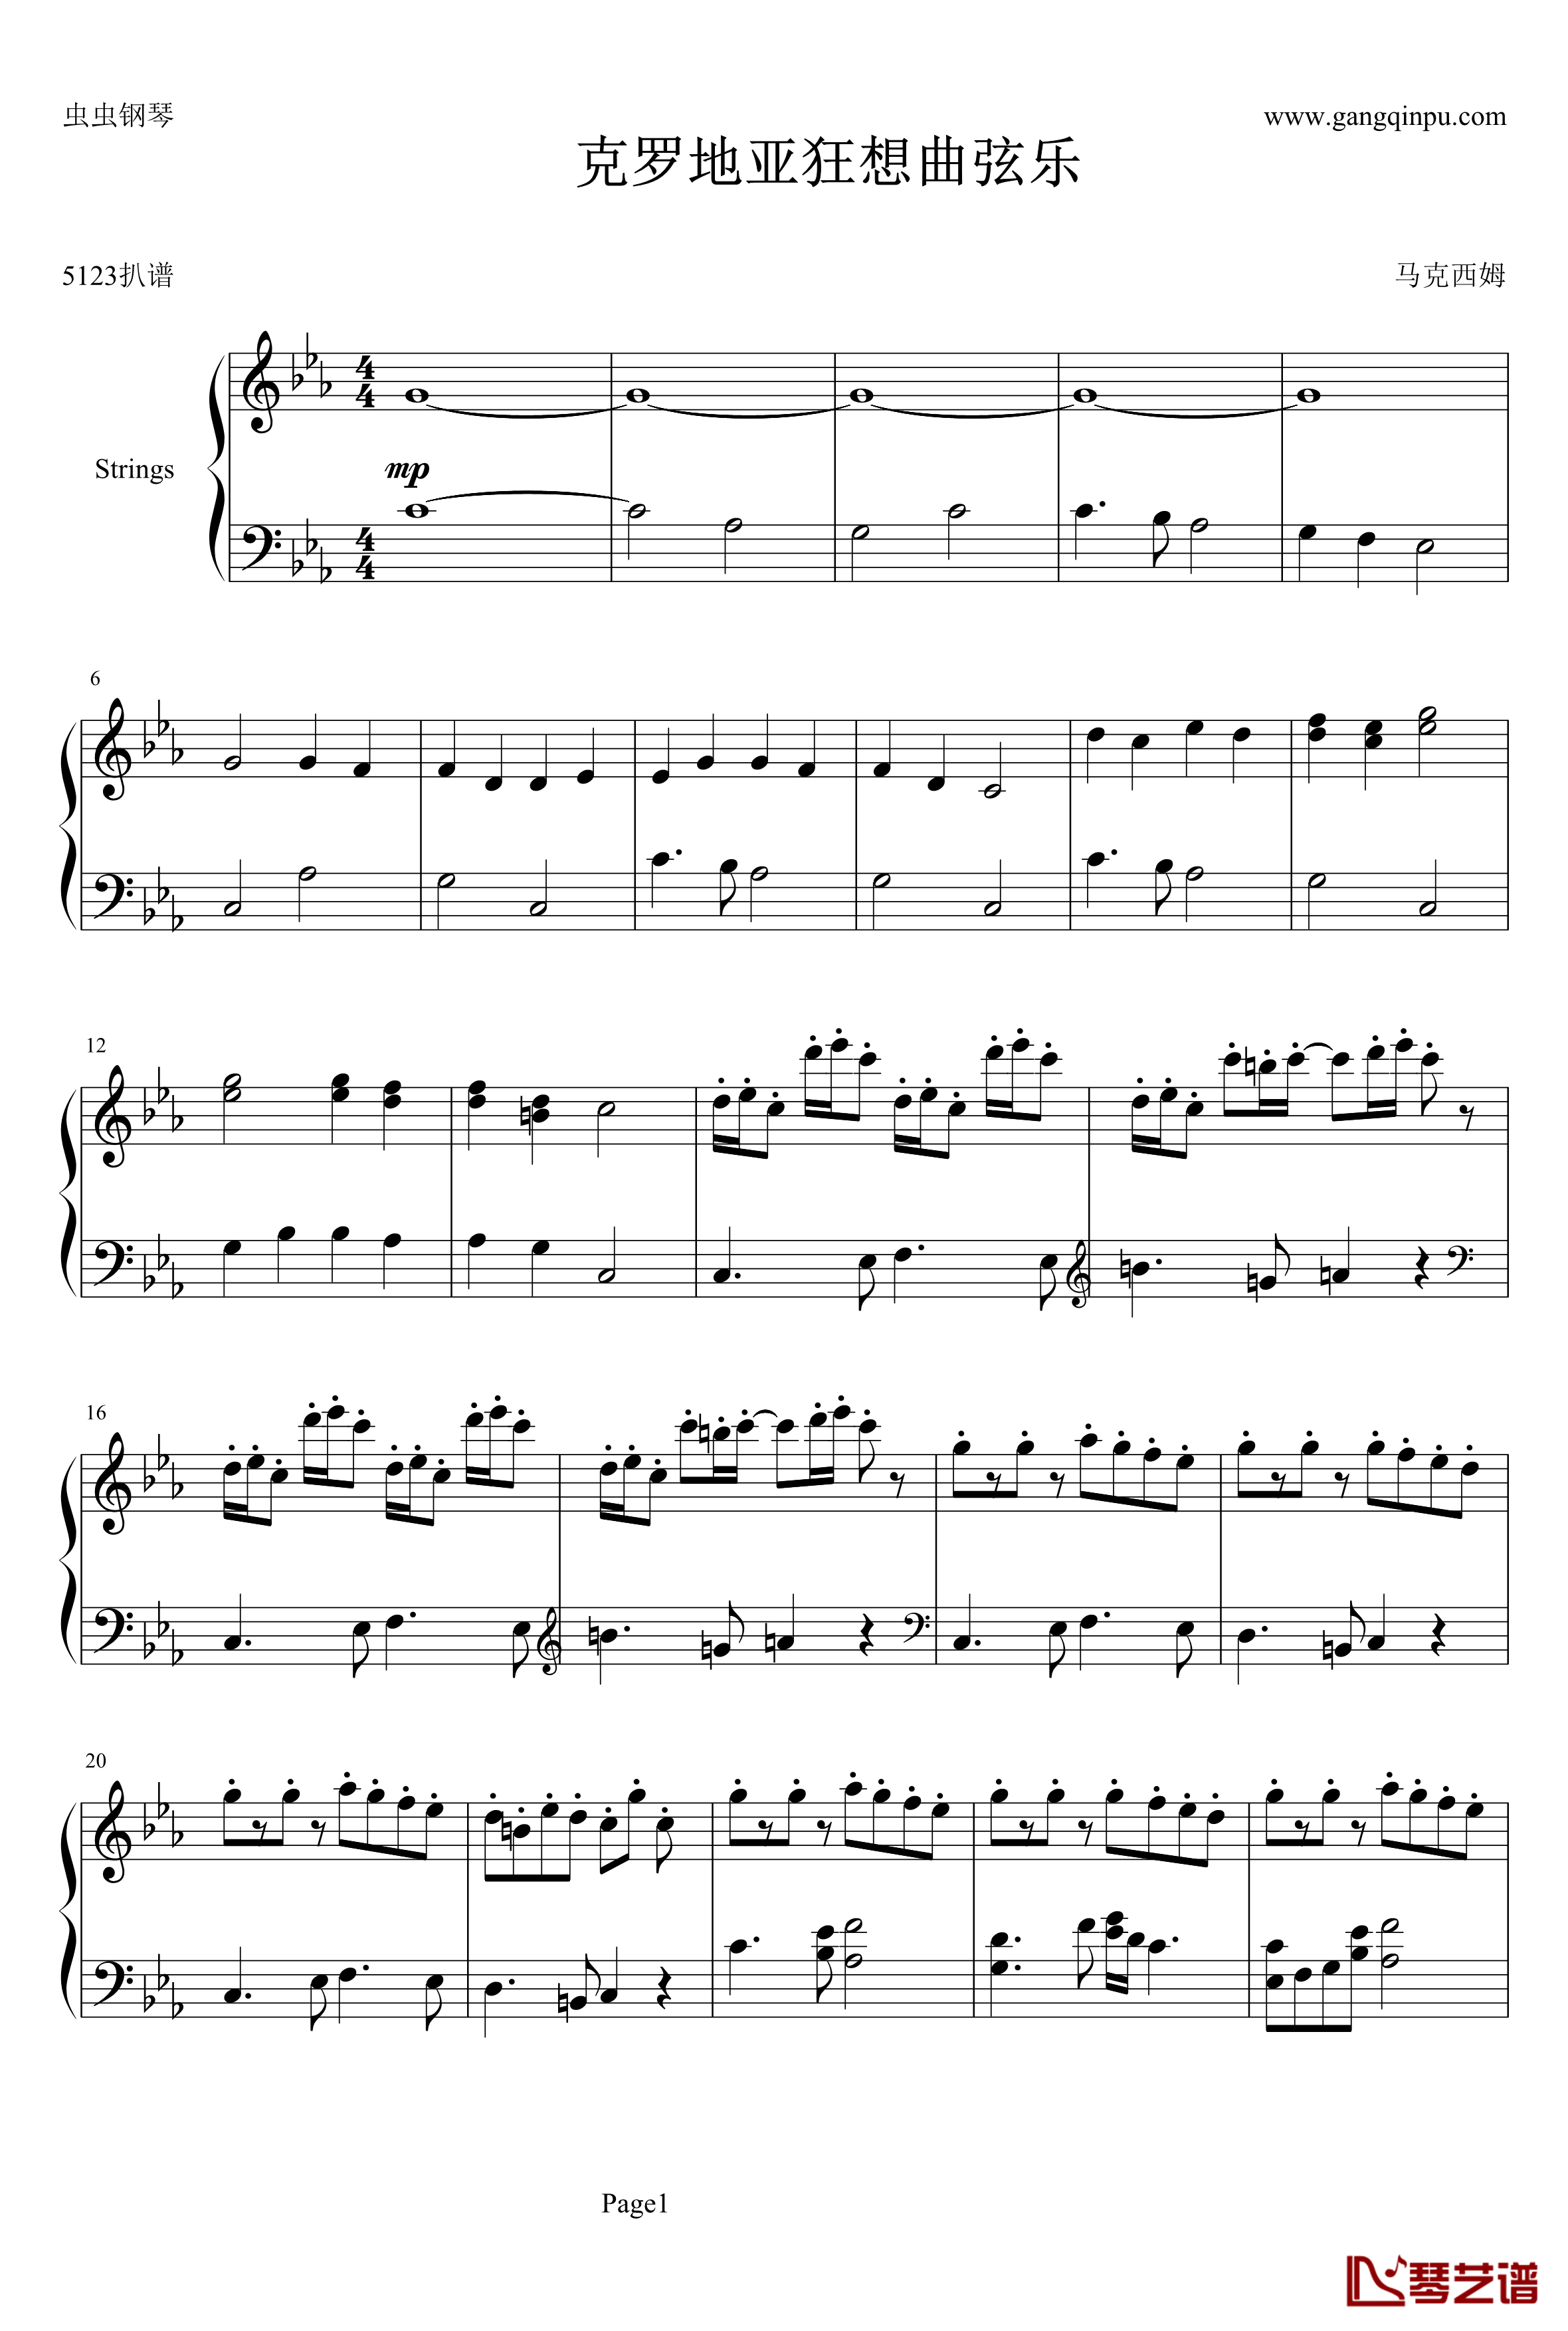 克罗地亚狂想曲弦乐钢琴谱-马克西姆-Maksim·Mrvica1